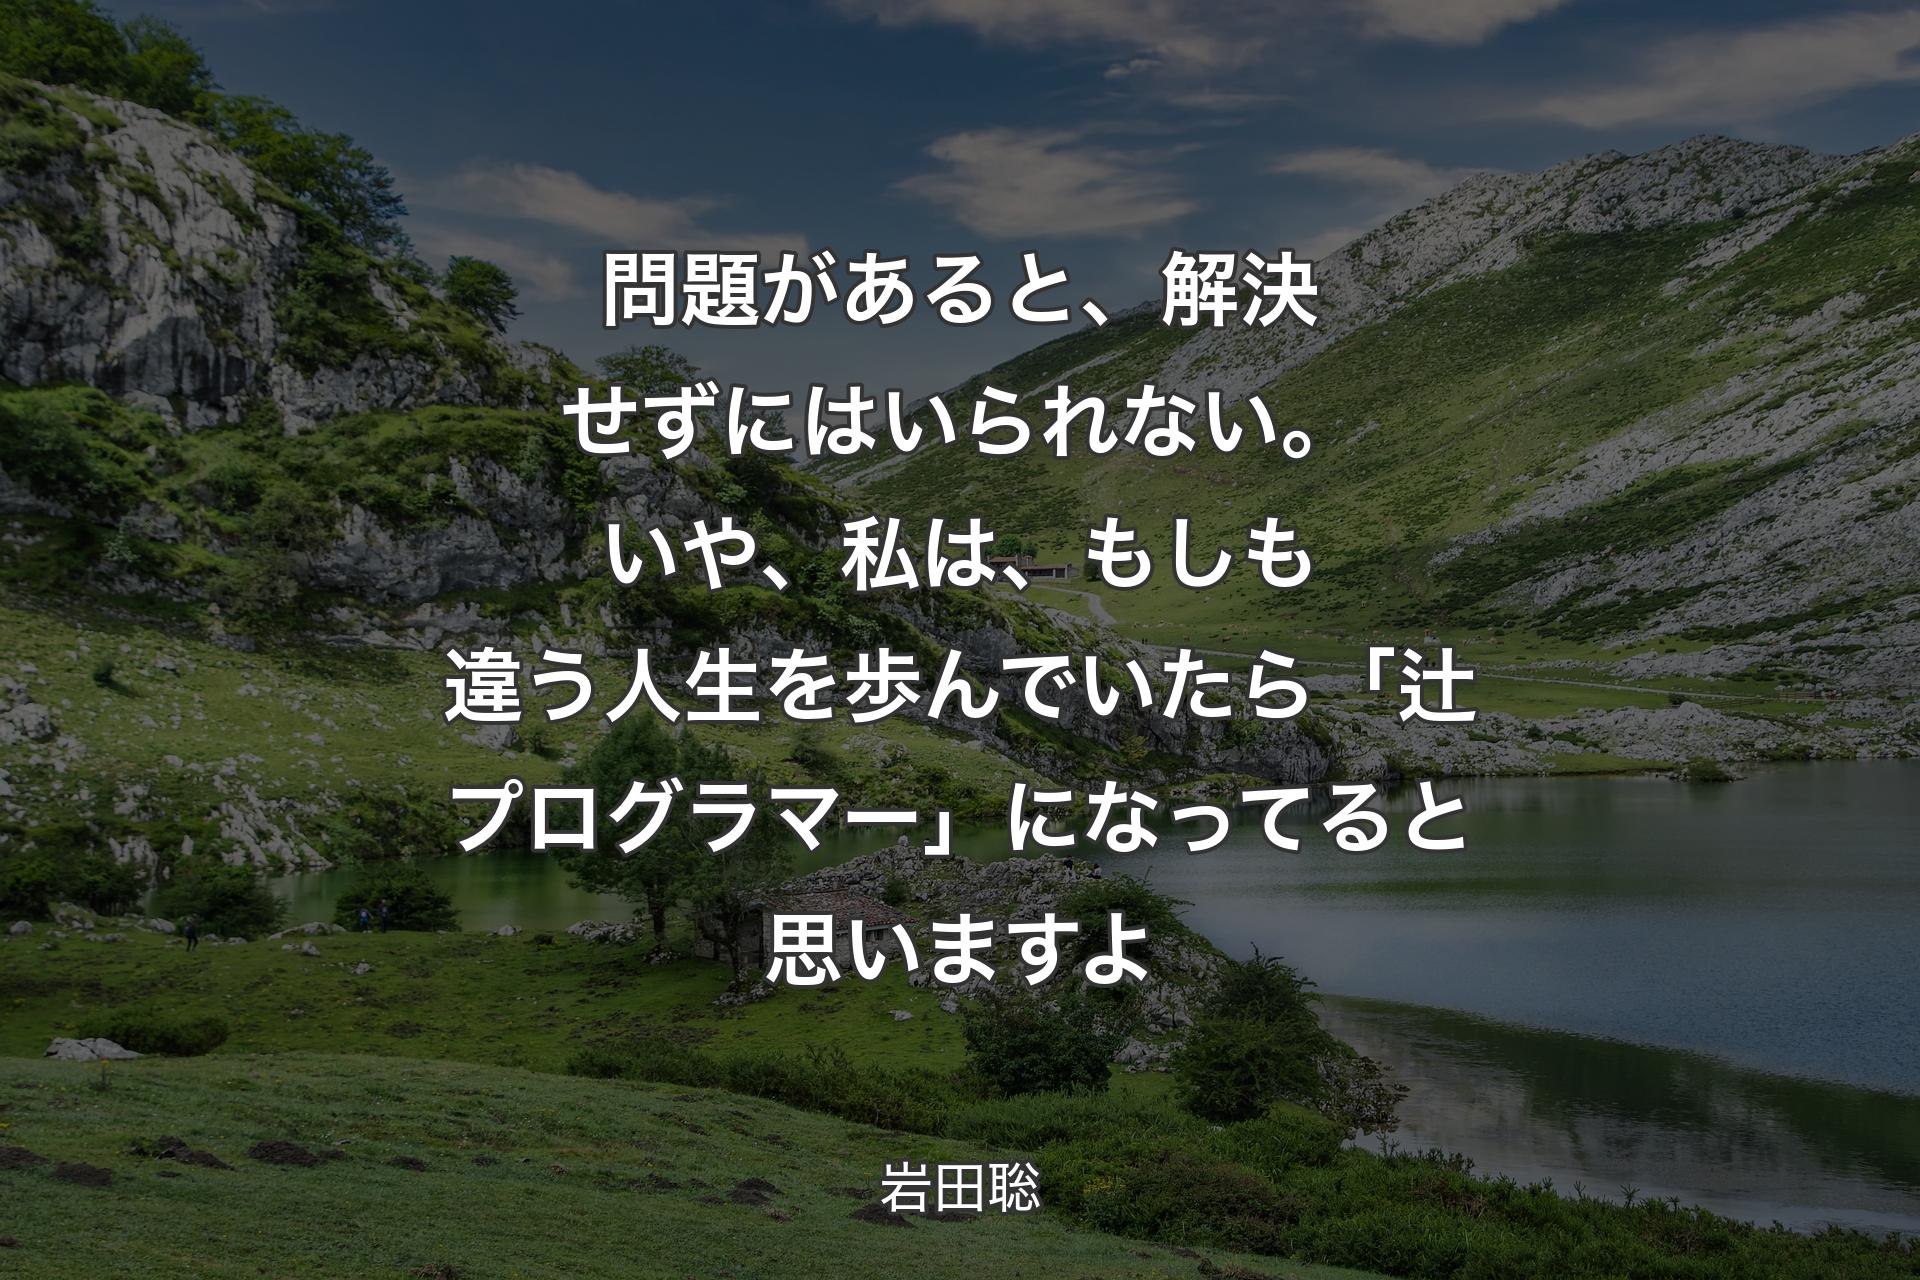 【背景1】問題があると、解決せずにはいられない。いや、私は、もしも違う人生を歩んでいたら「辻プログラマー」になってると思いますよ - 岩田聡